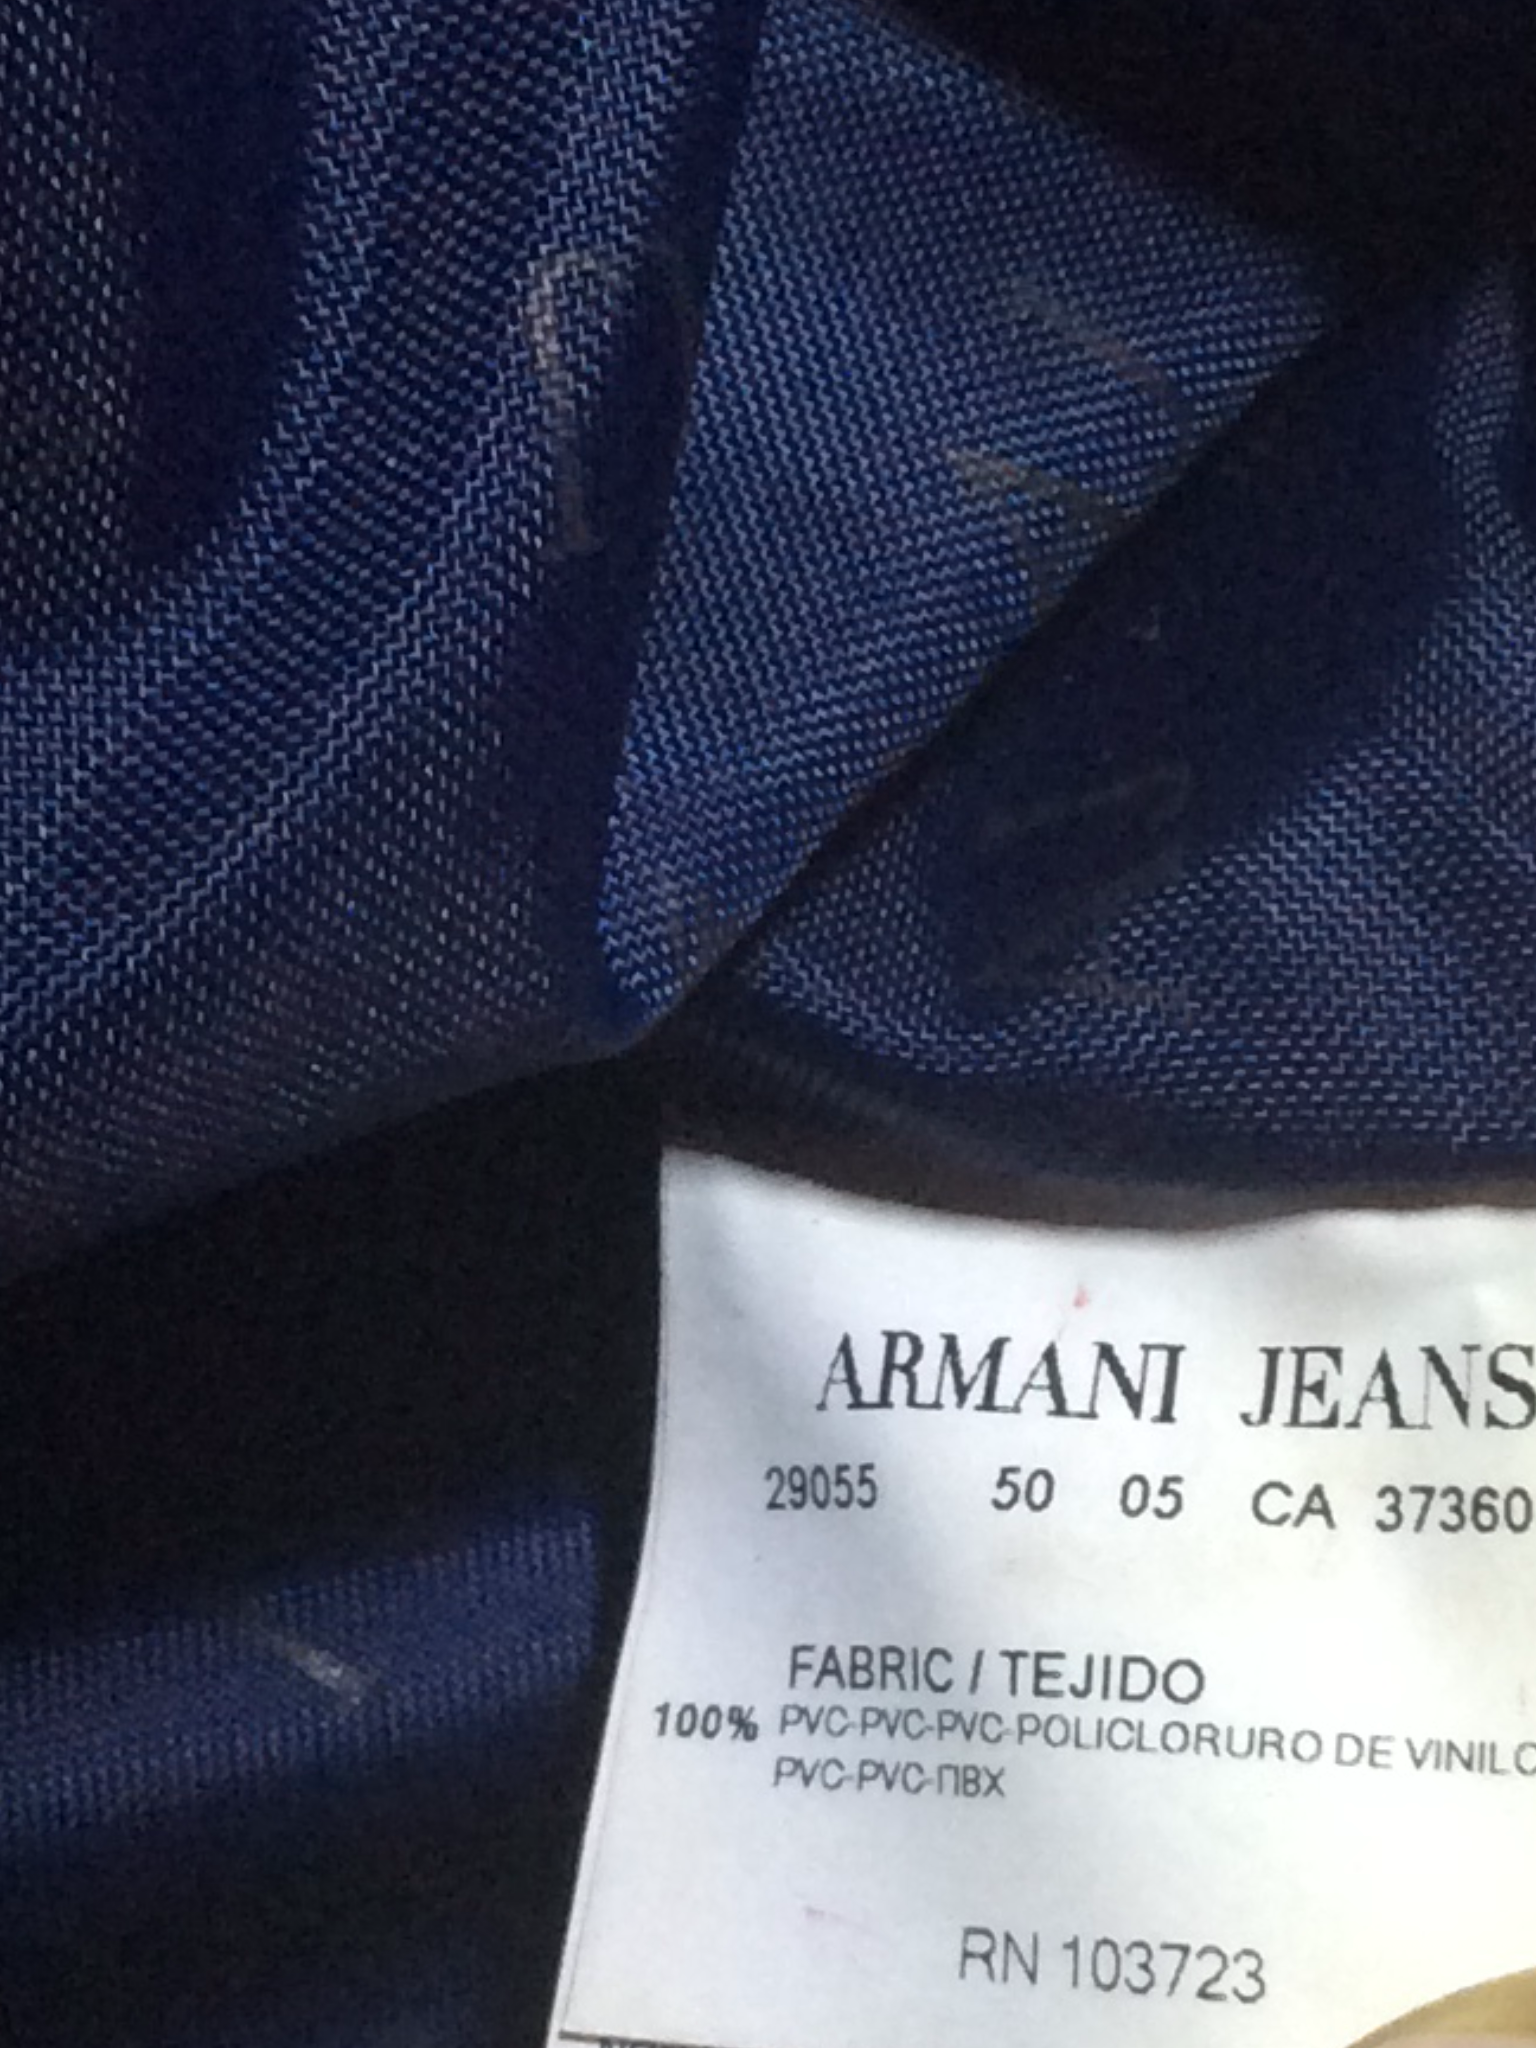 armani jeans rn 103723 ca 37360